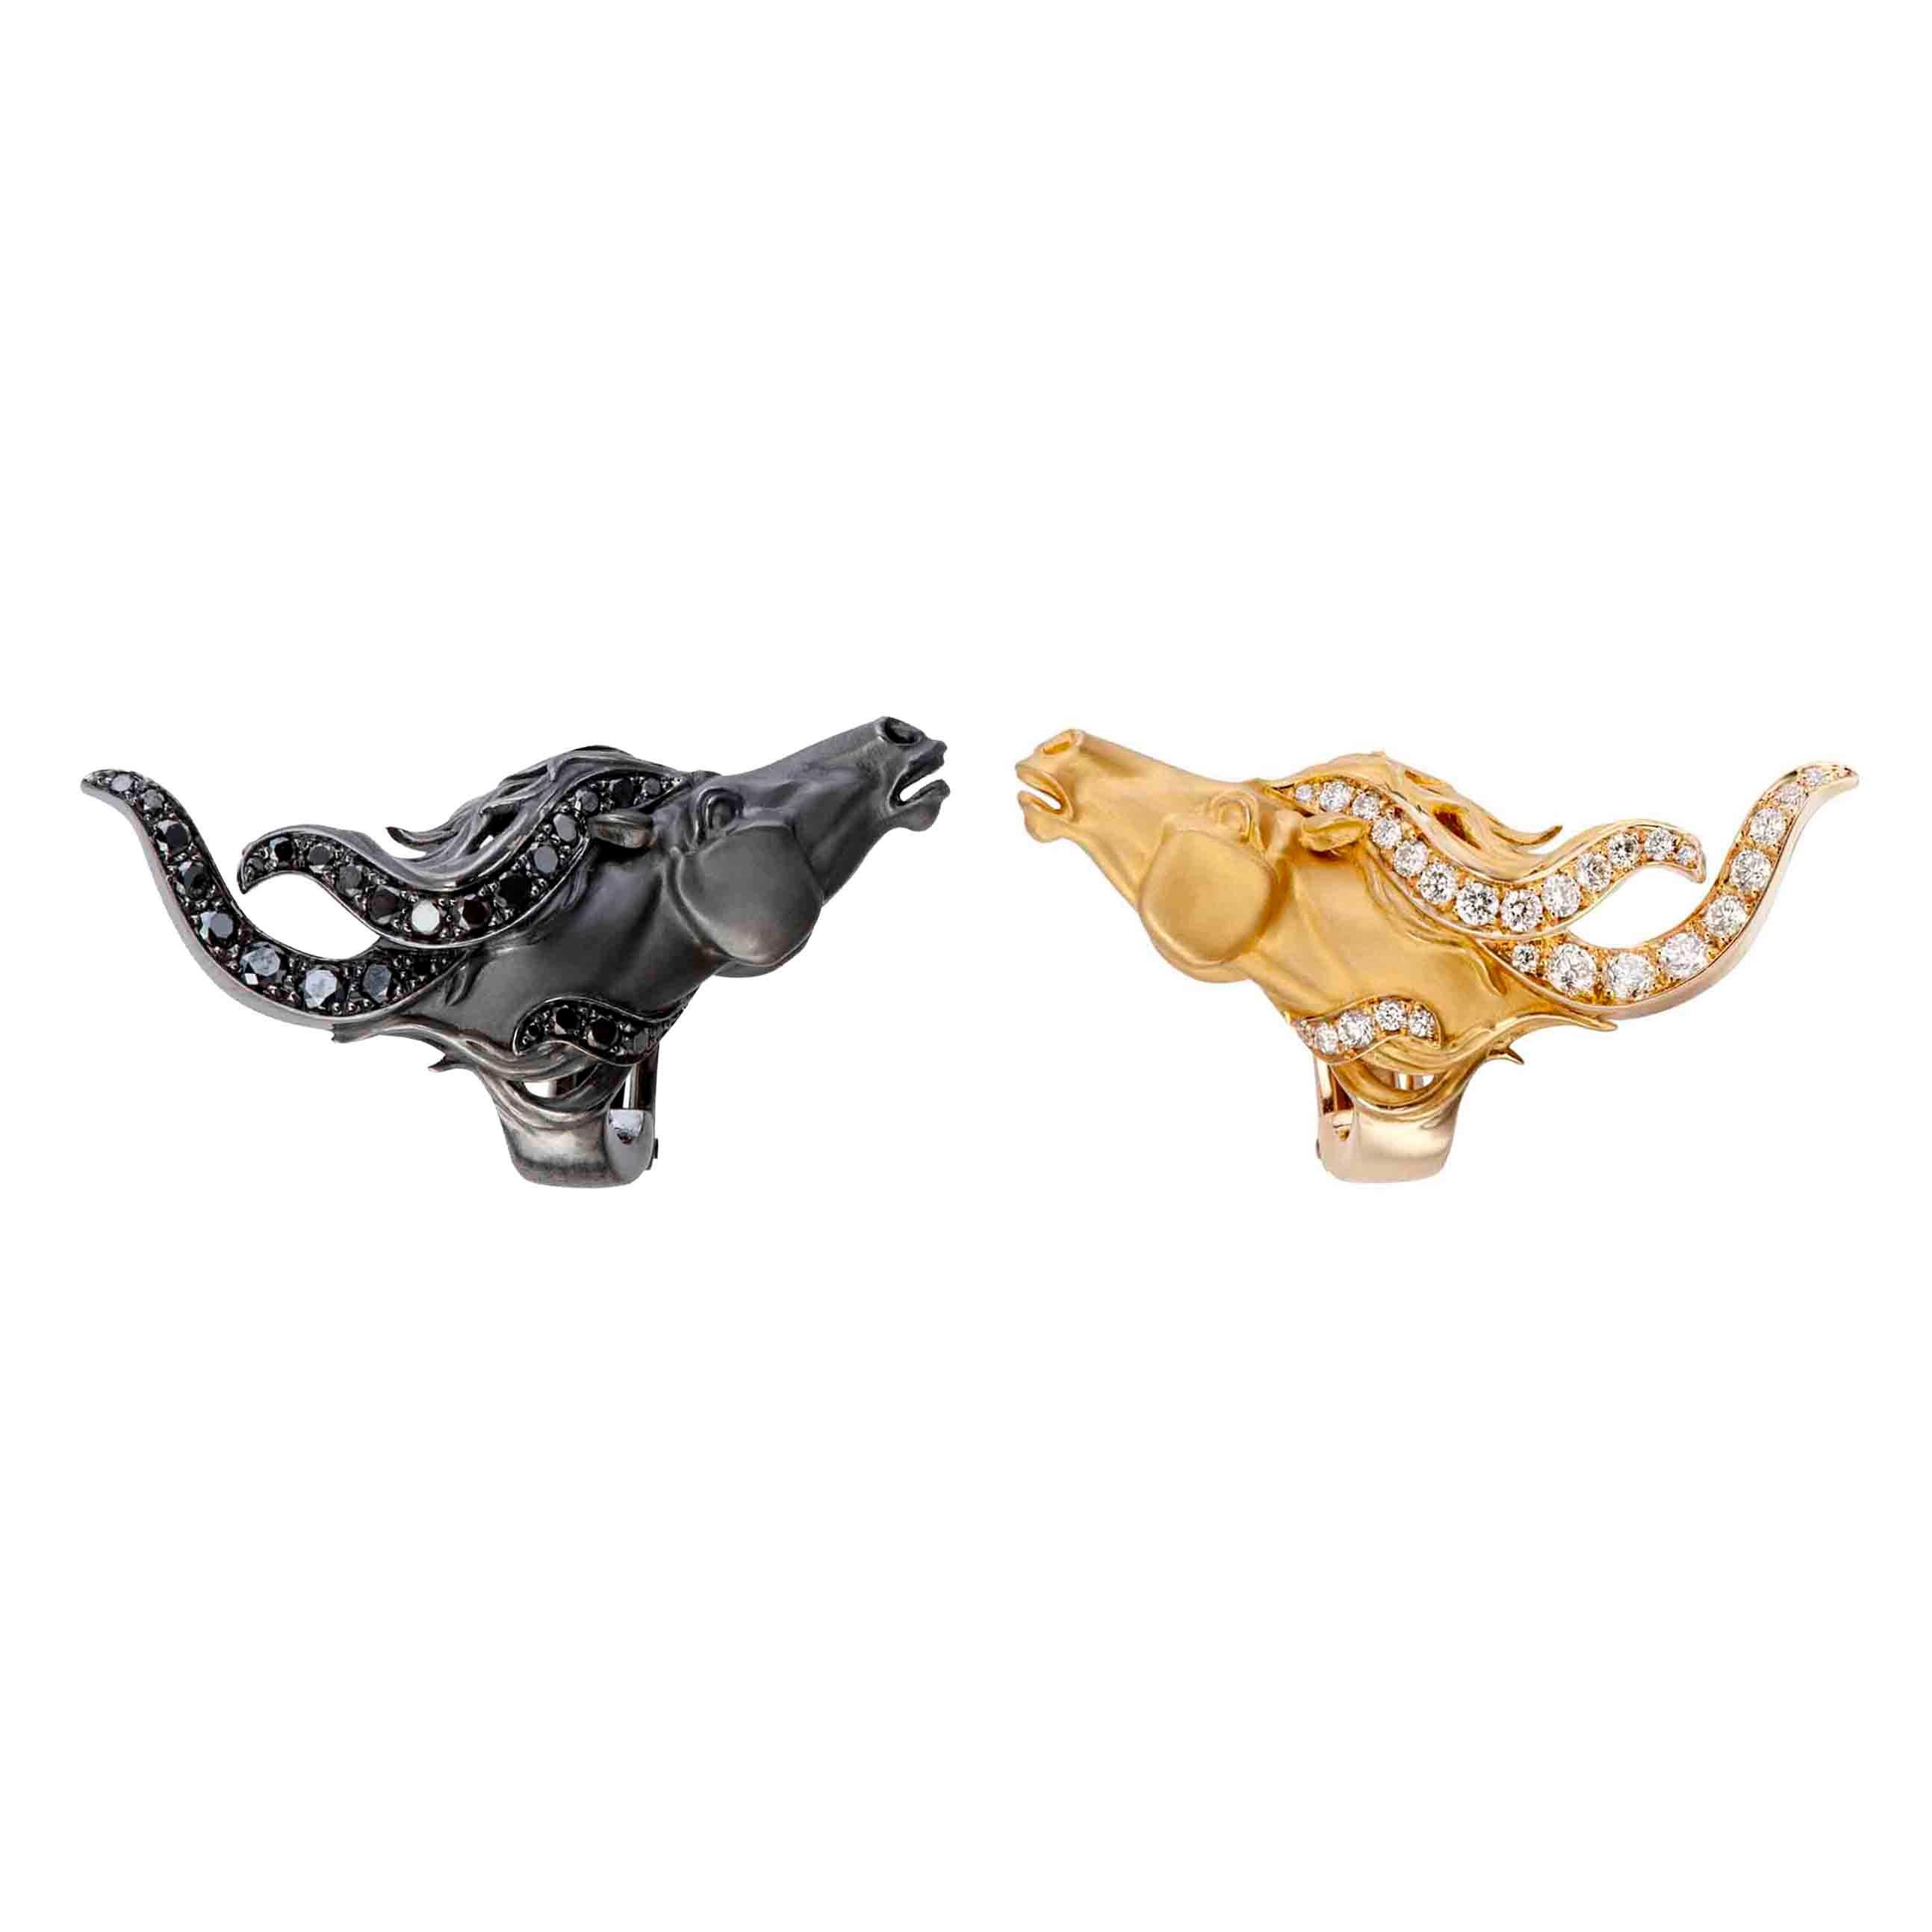 Signées par Carrera y Carrera, réalisées en métaux contrastés, en or jaune et en rhodium noir, ces têtes de cheval présentent une chevelure fluide rehaussée de diamants. Boucles d'oreilles Wild Spirit, avec un diamant total de 0,65 carat en or blanc